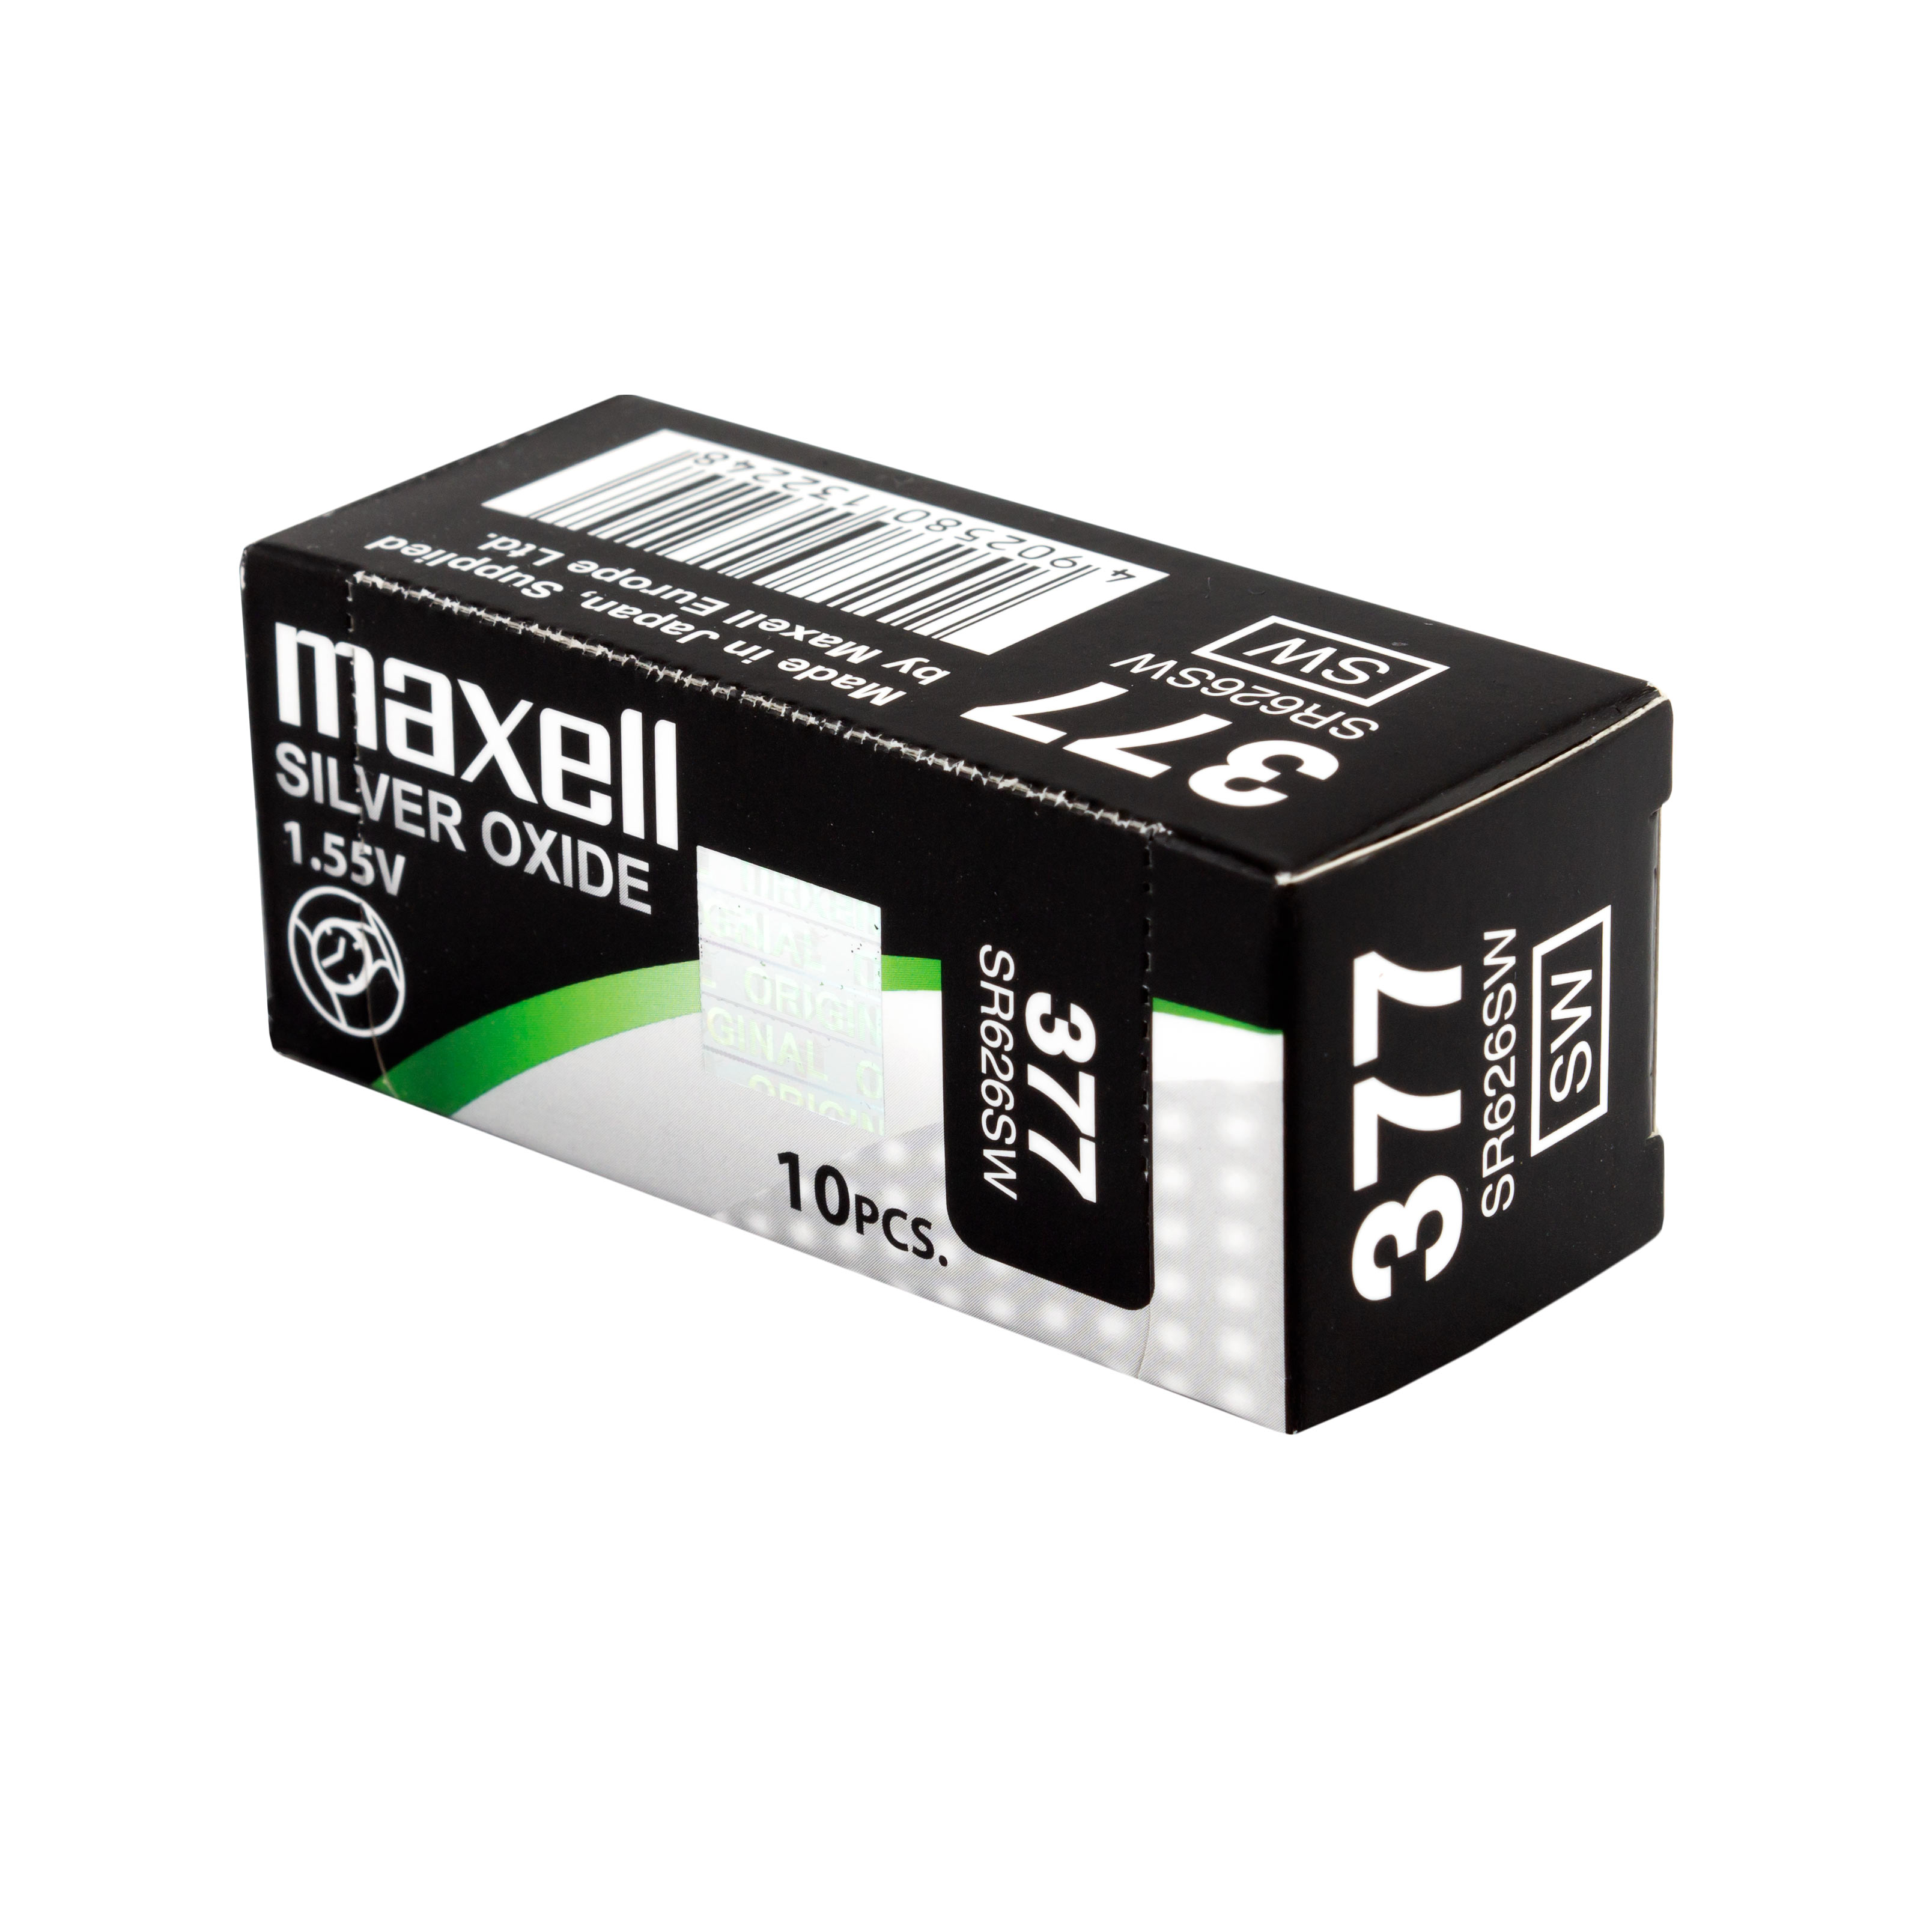 Maxell Battery 377